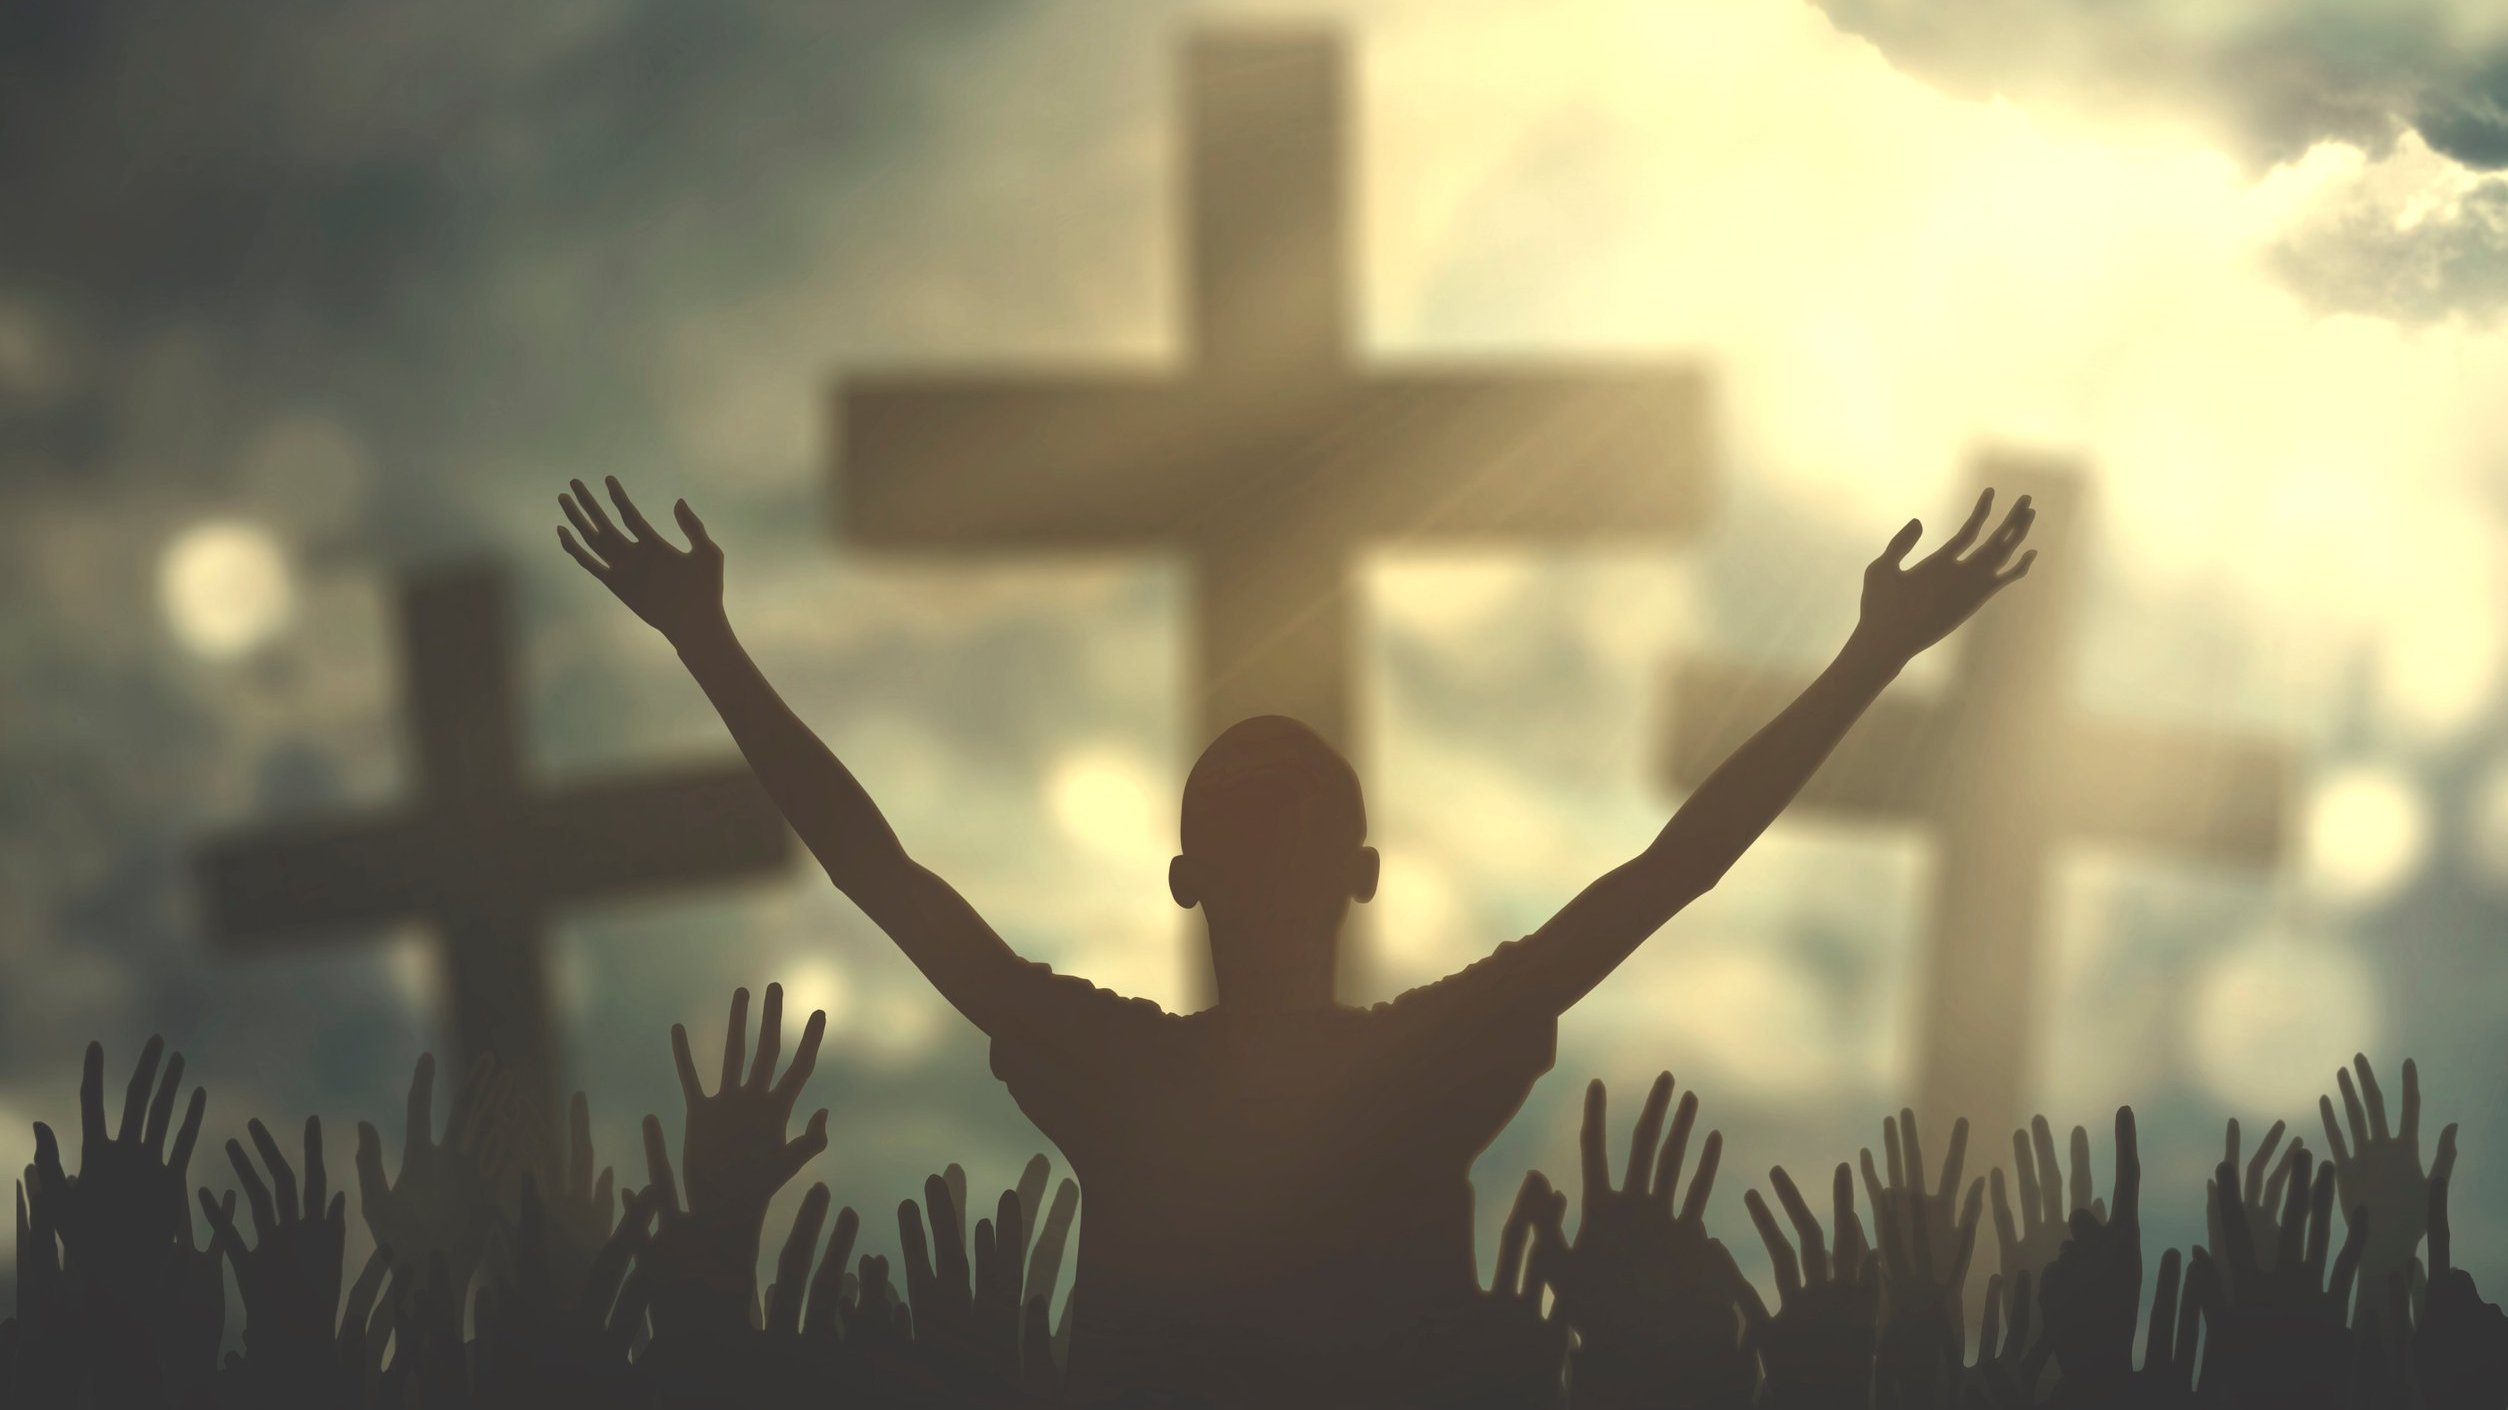 Pessoa com braços abertos em direção a uma cruz